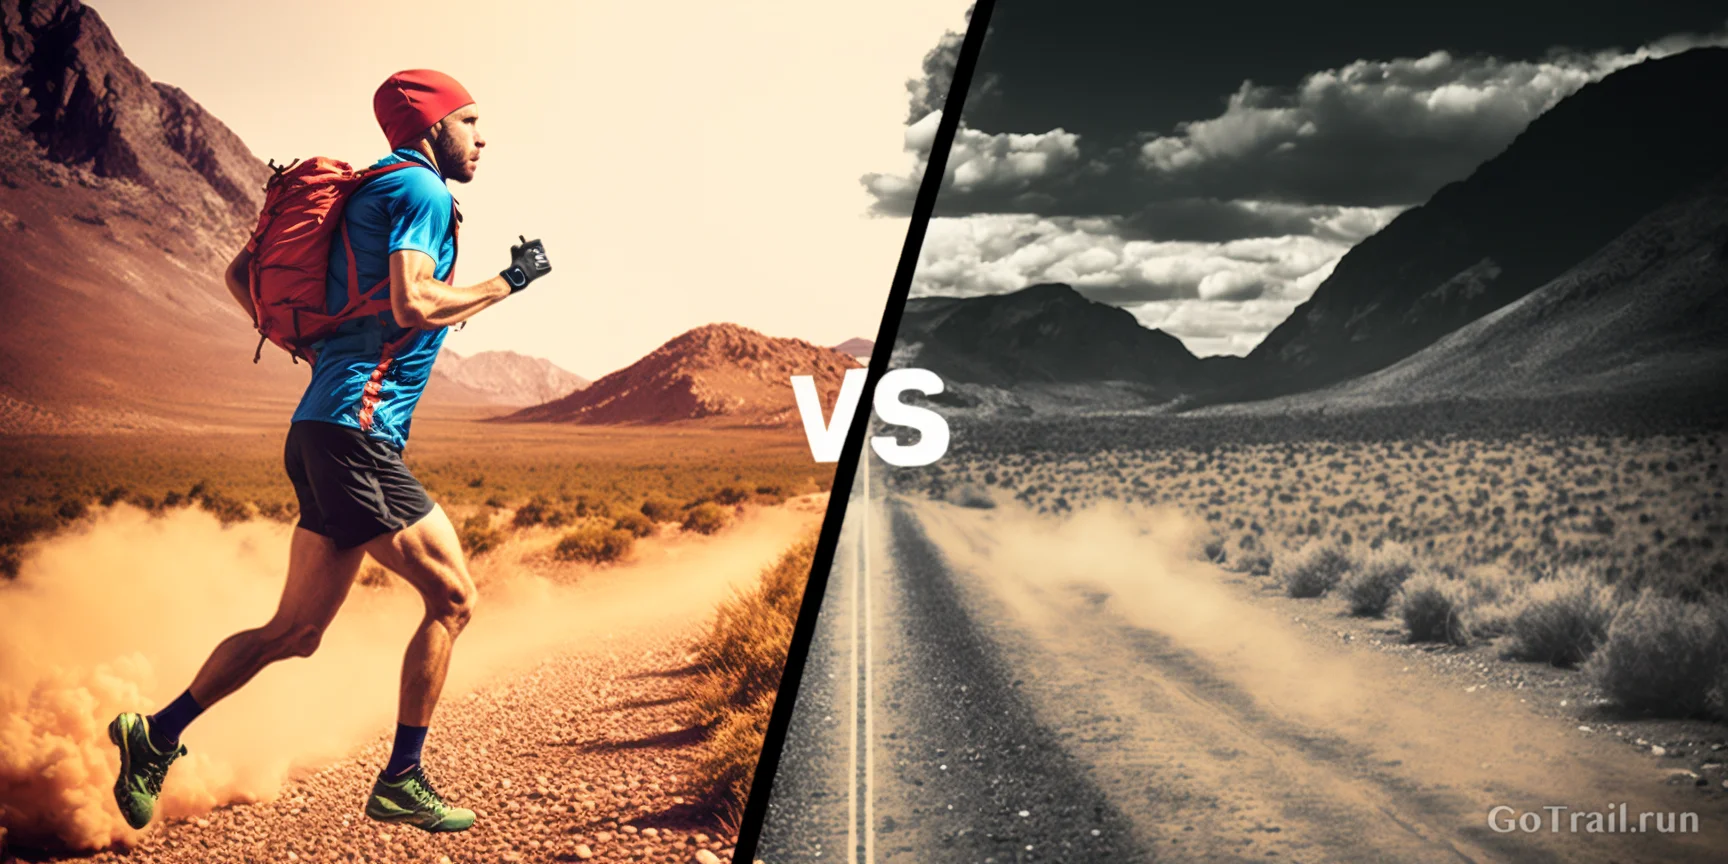 Trail Running vs. Road Running